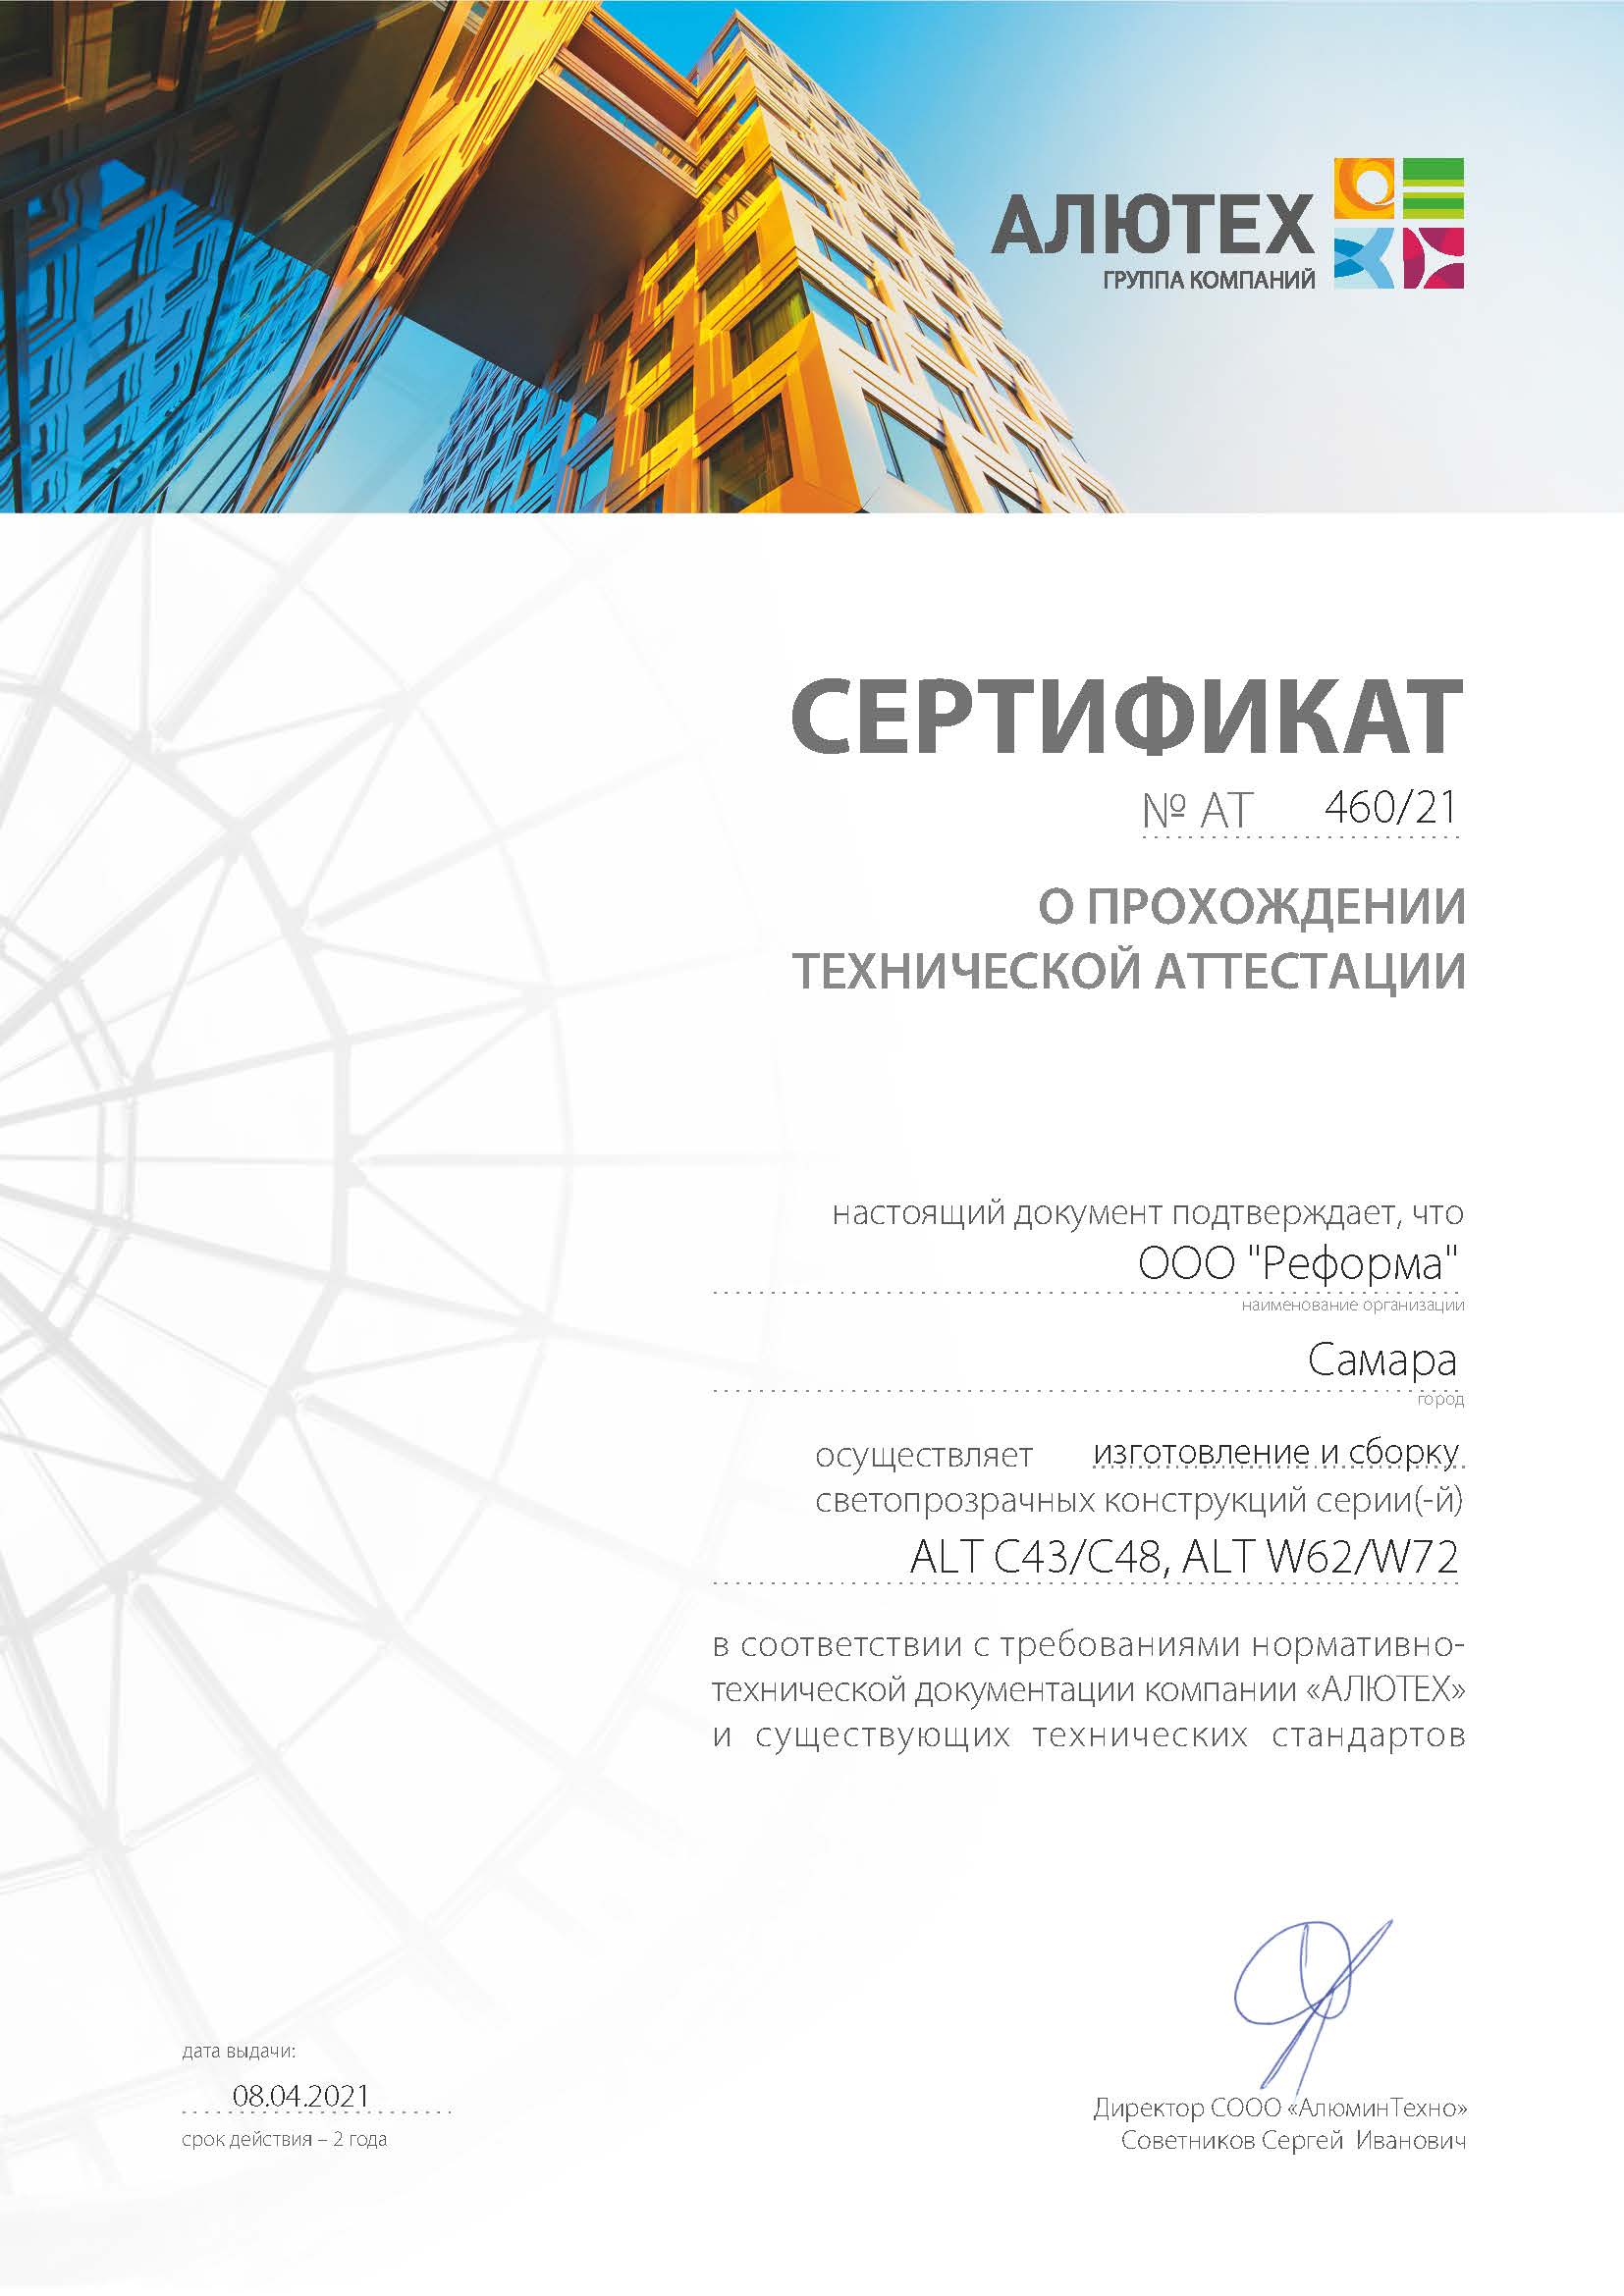 Технический сертификат Алютех